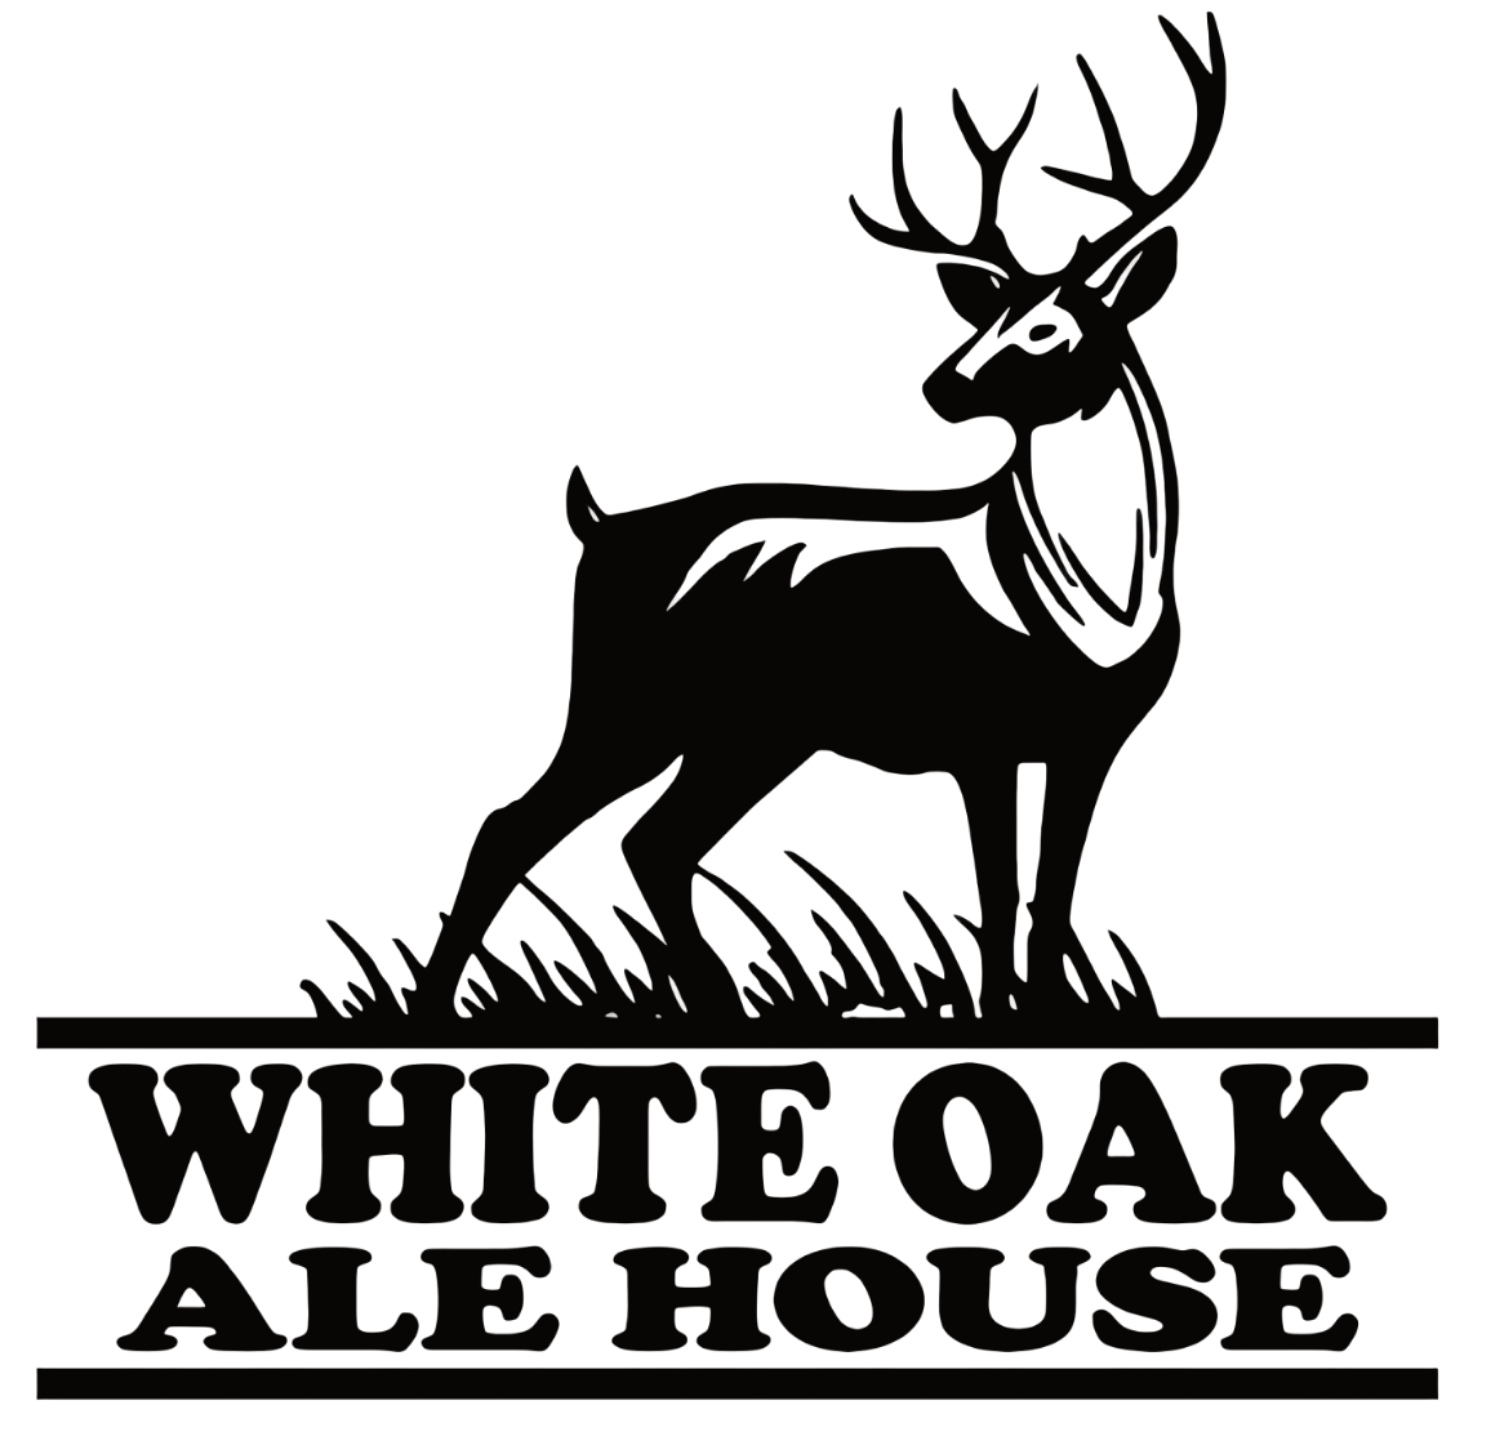 White Oak Ale House